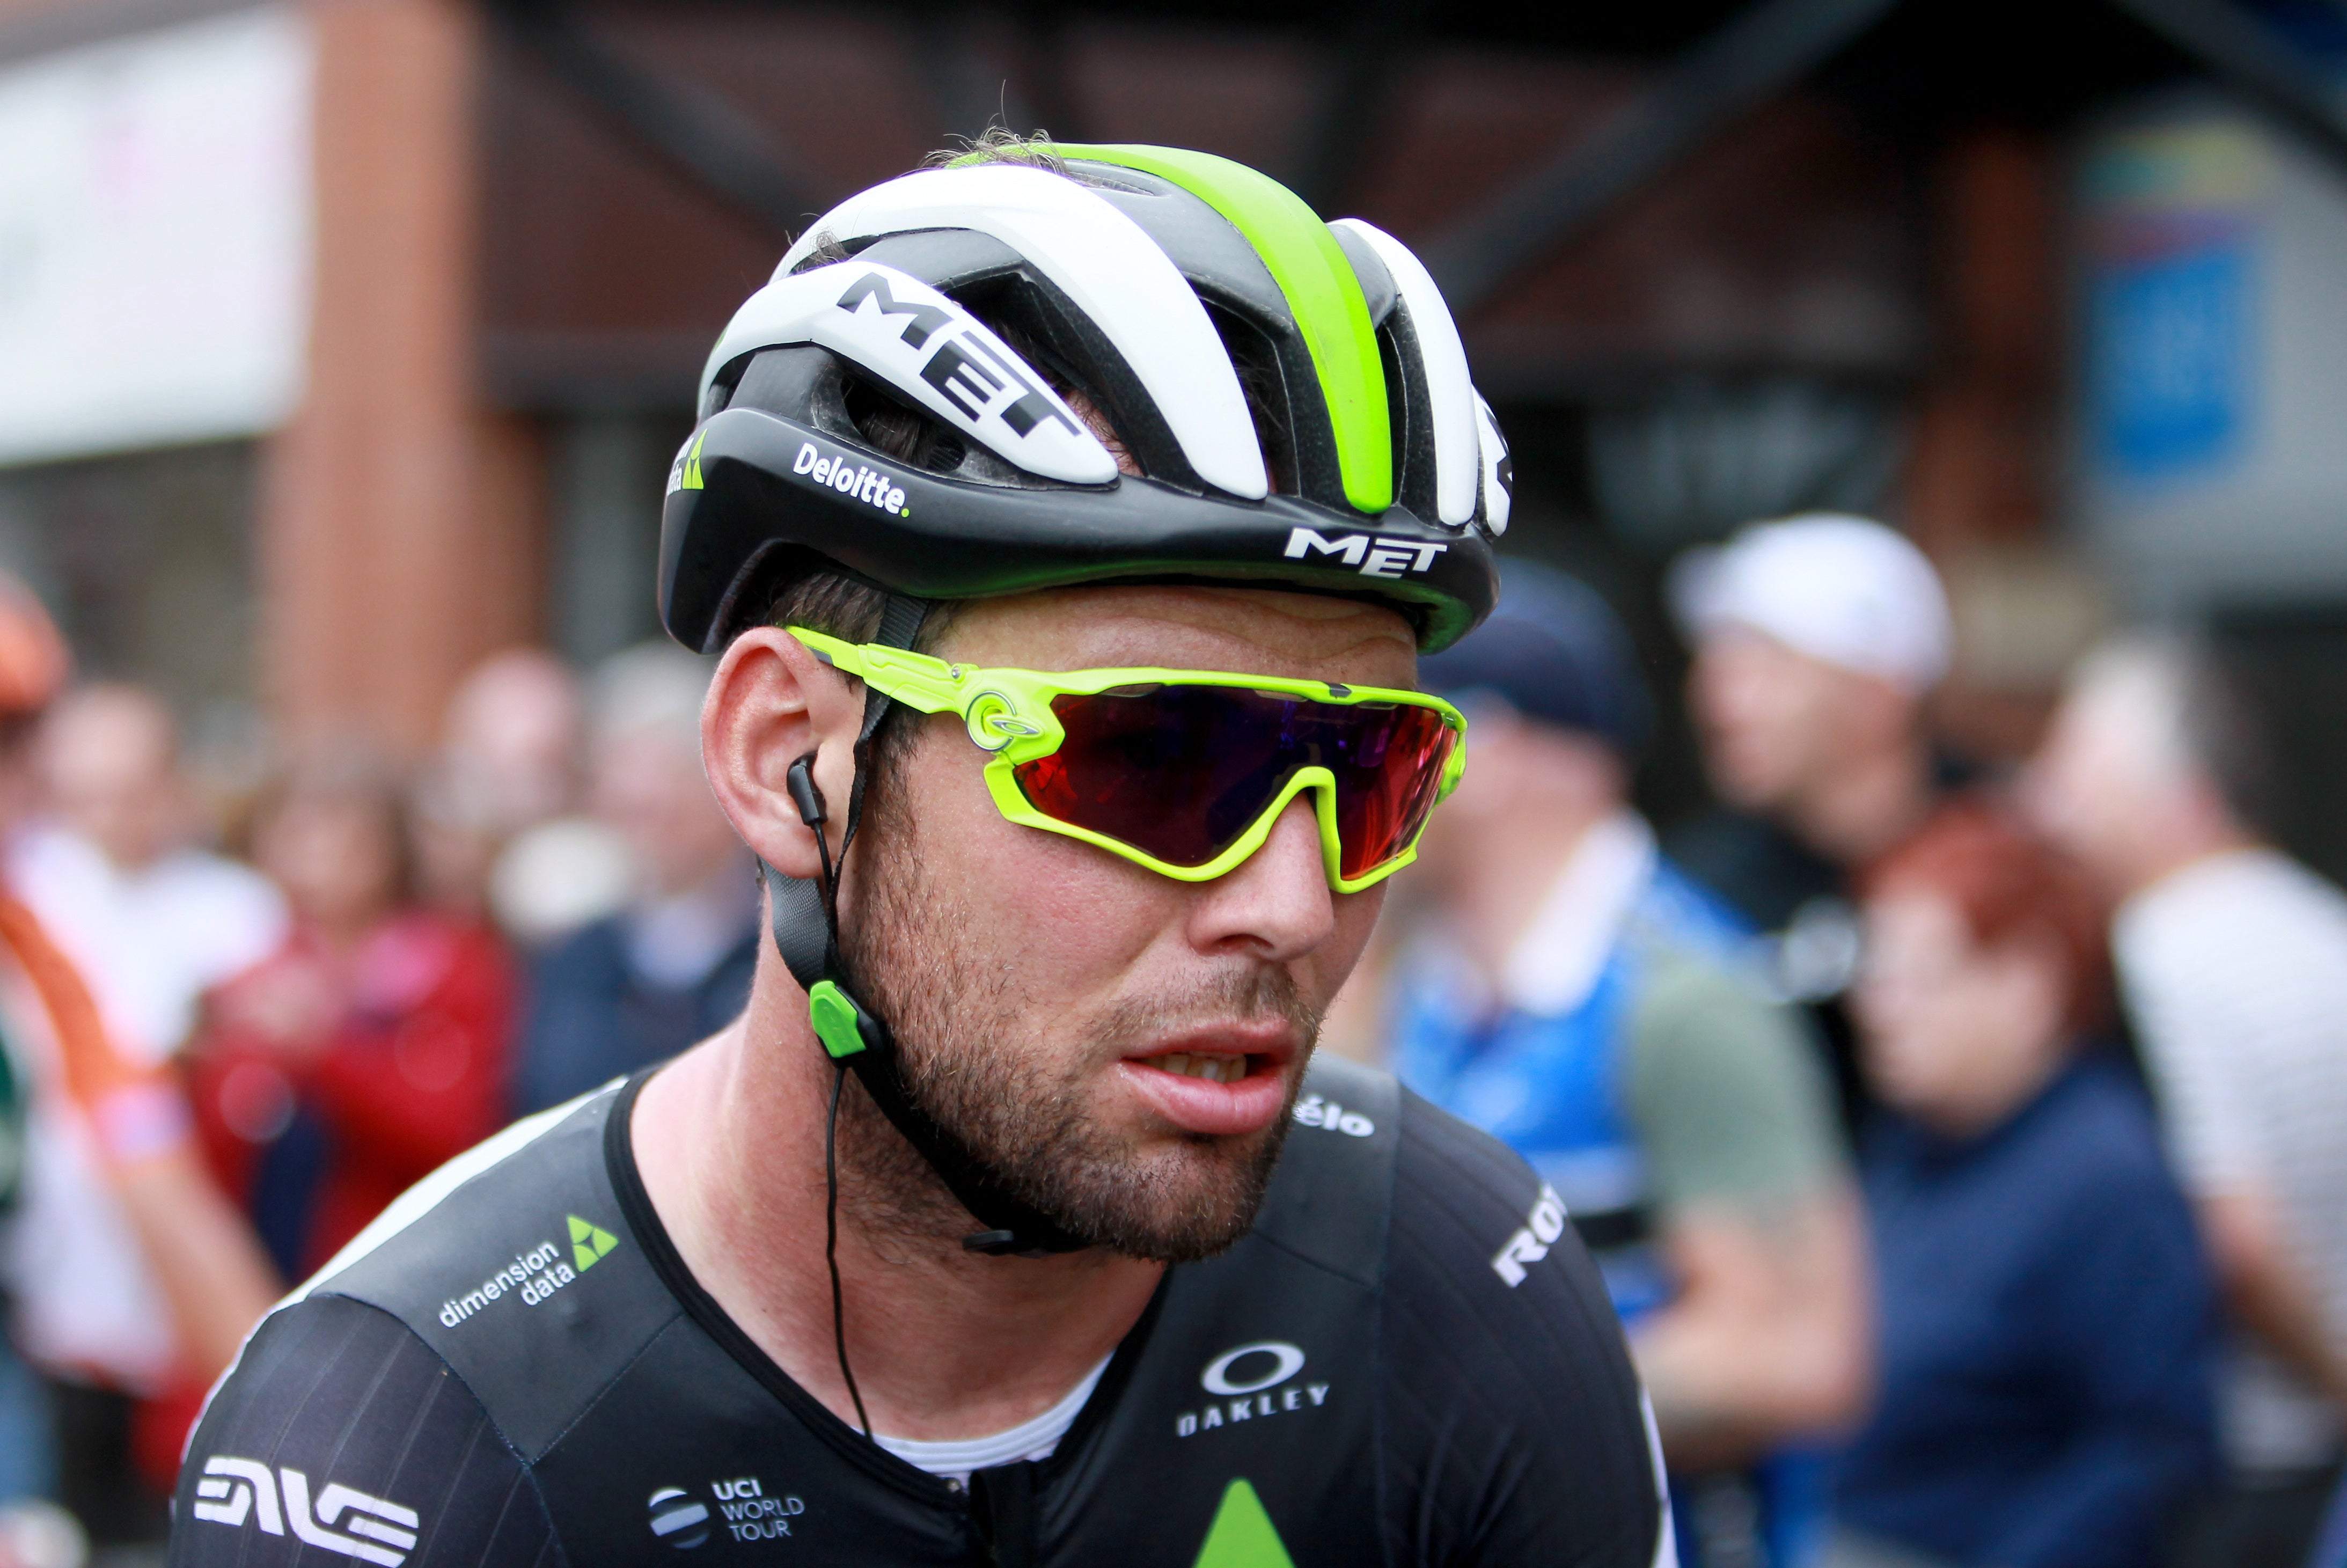 Mark Cavendish faces a battle at next year’s Tour de France (Richard Sellers/PA)